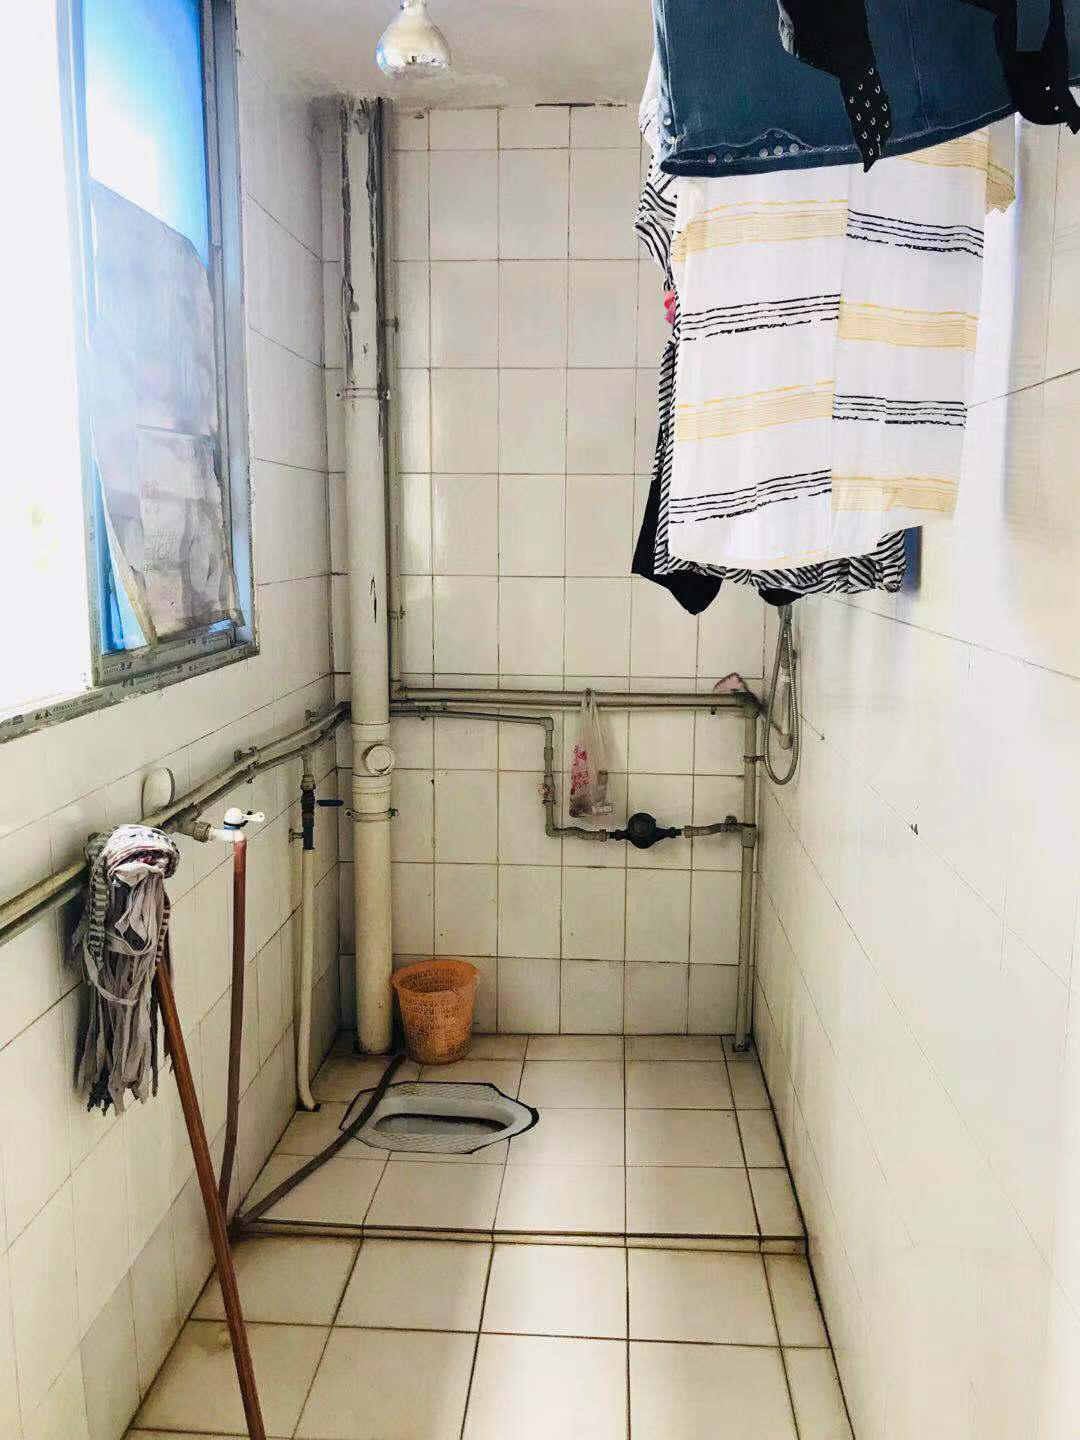 重庆警方通报女生校内如厕视频被兜售：照片系拼接 校内未发现偷拍设备_手机新浪网